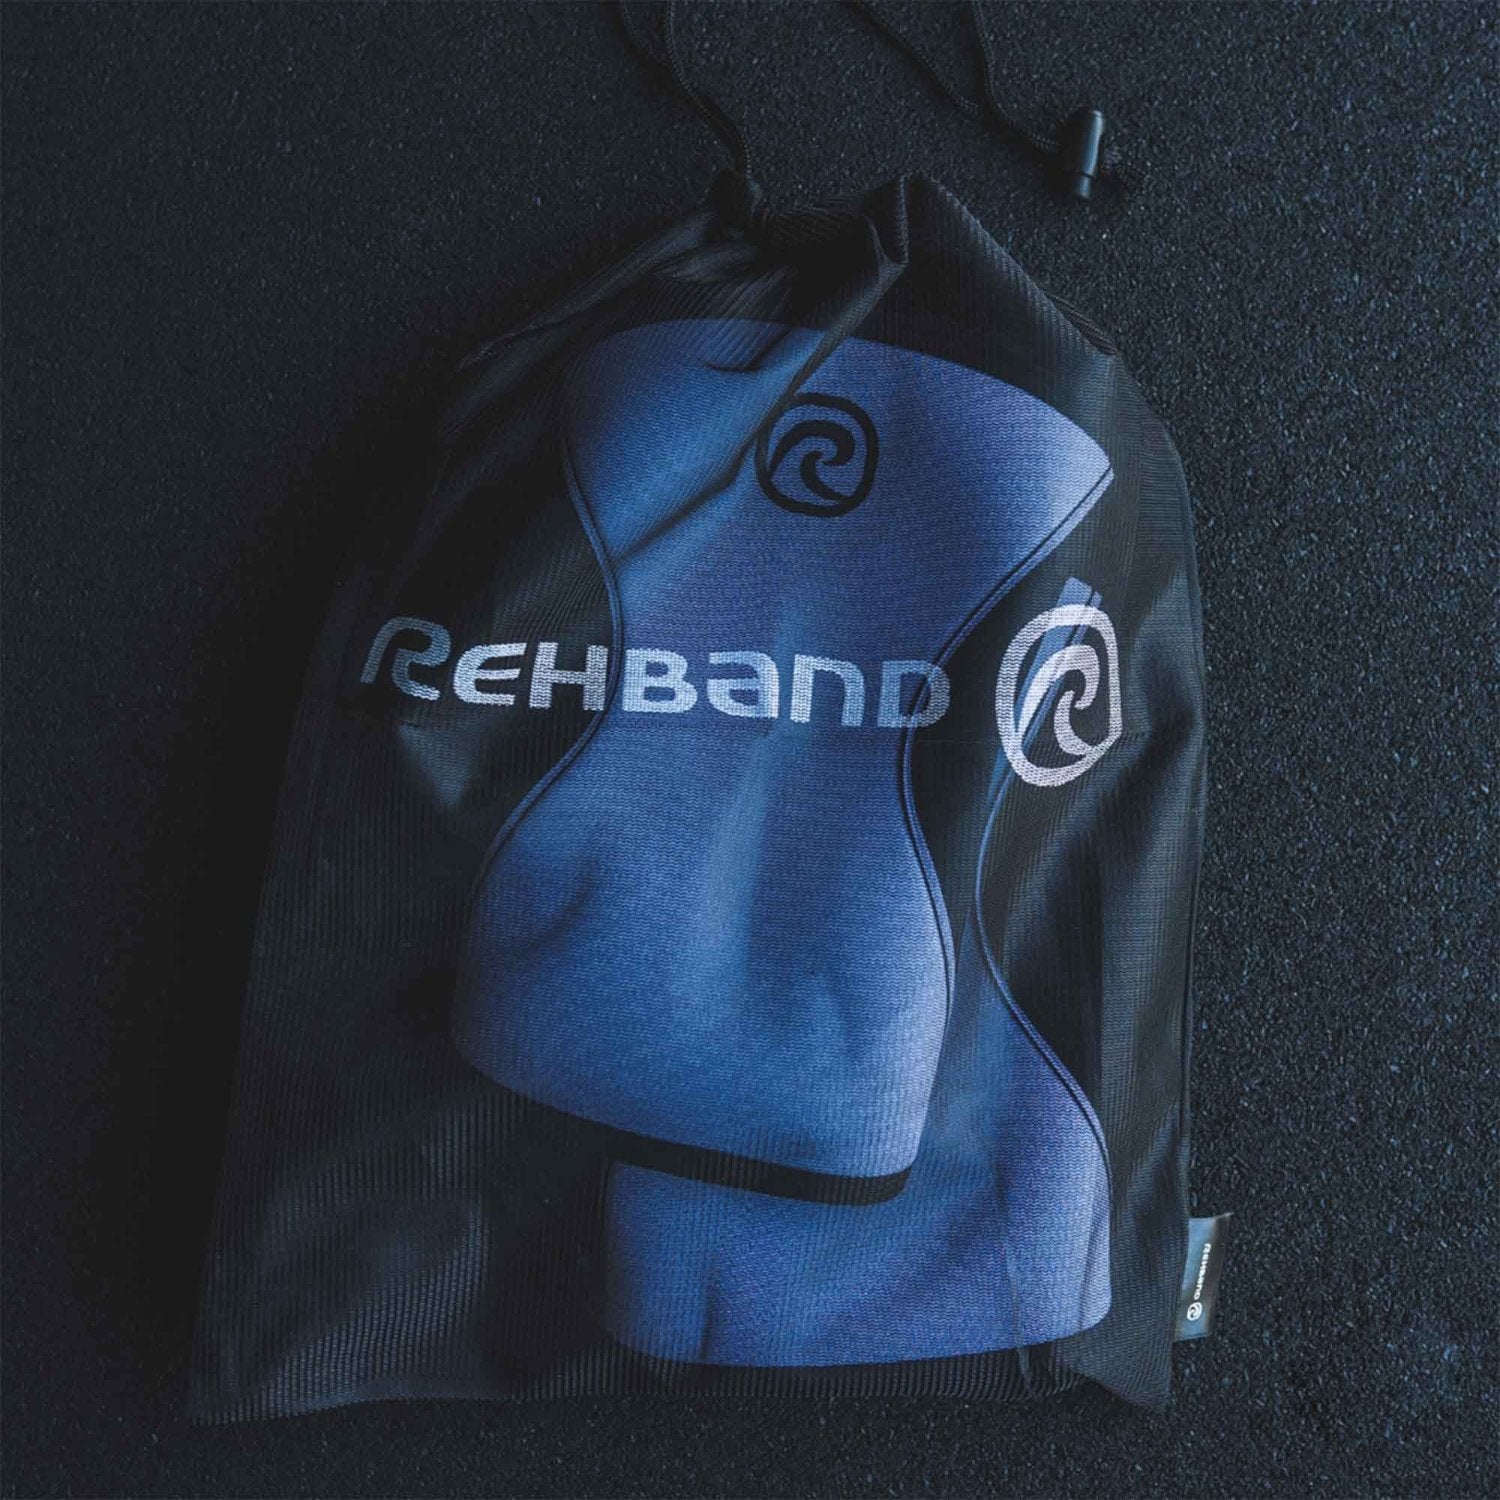 Rehband Laundry Bag (Wäschebeutel für Sportausrüstung) kaufen bei HighPowered.ch